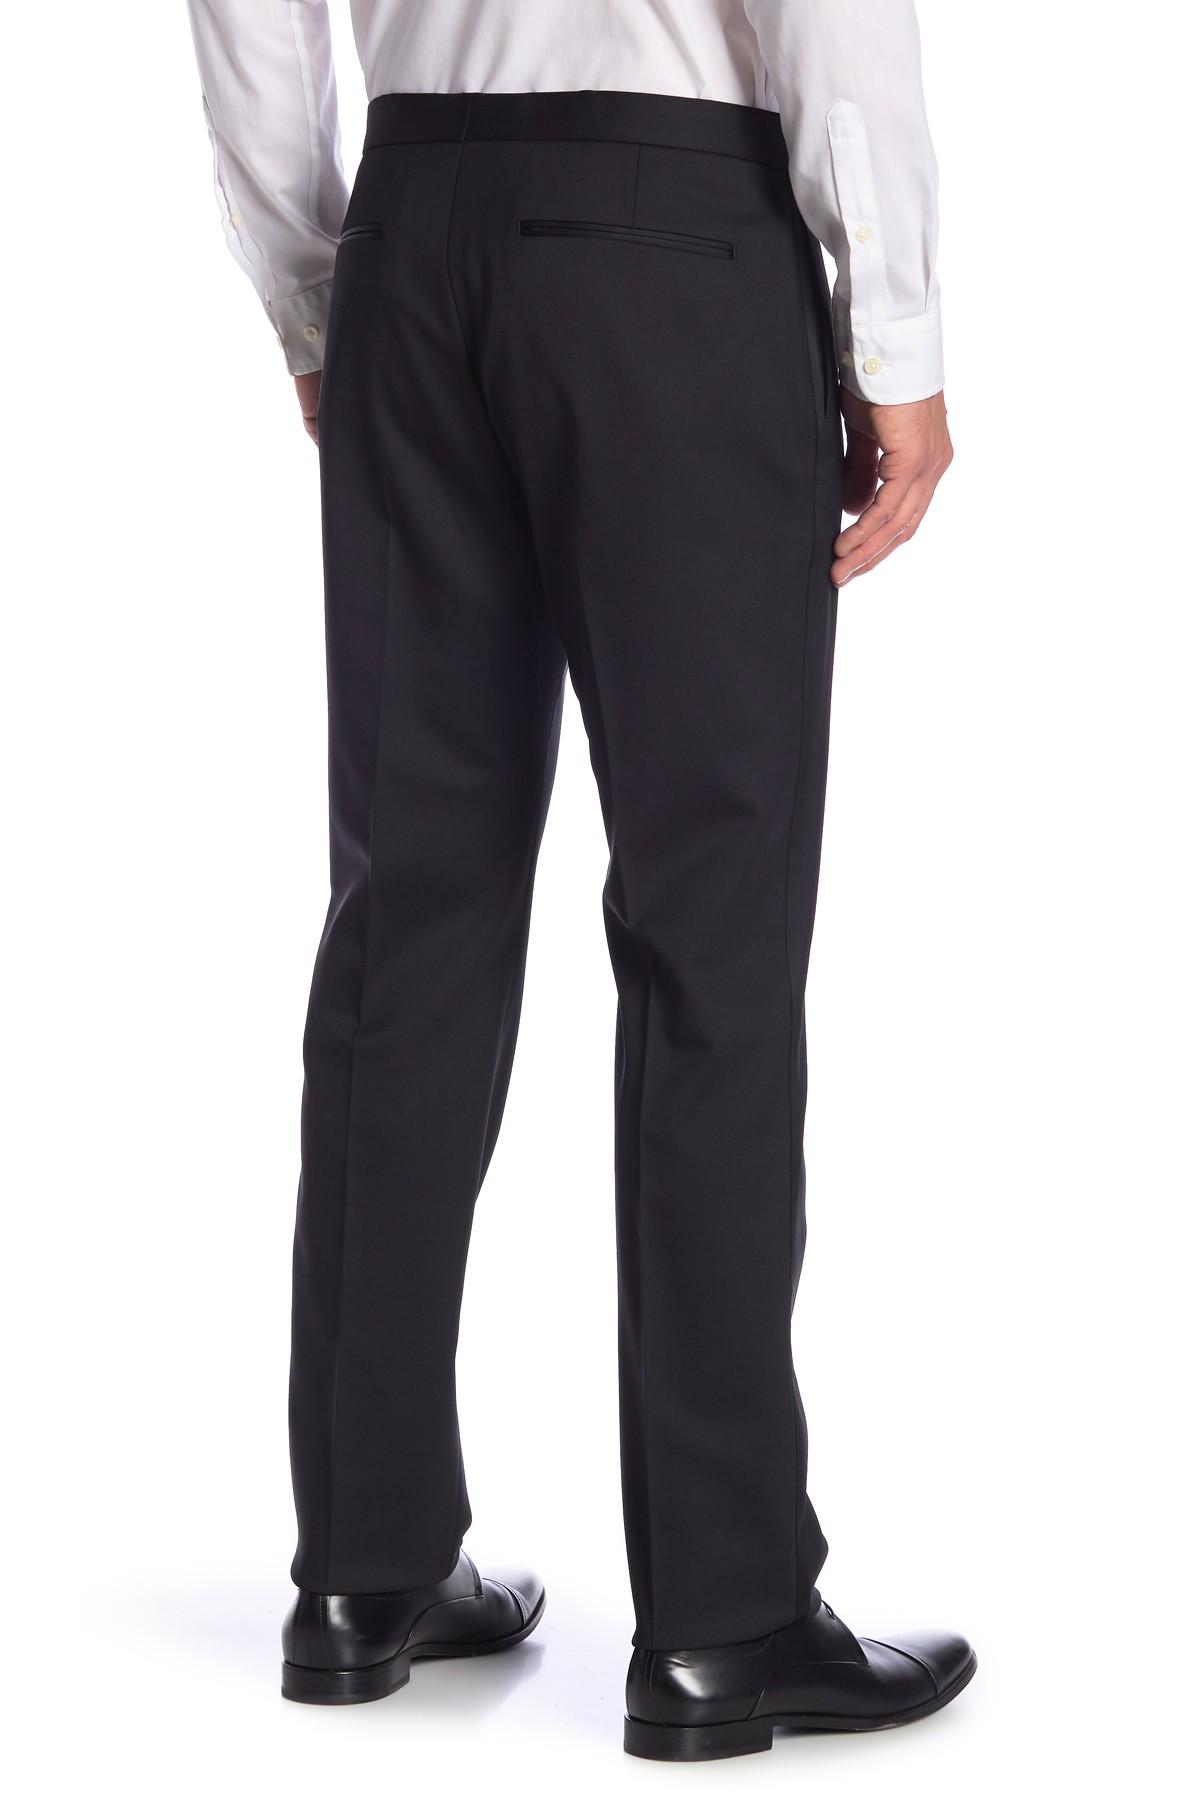 Theory Jake Tuxedo Wool Pants in Black for Men - Lyst